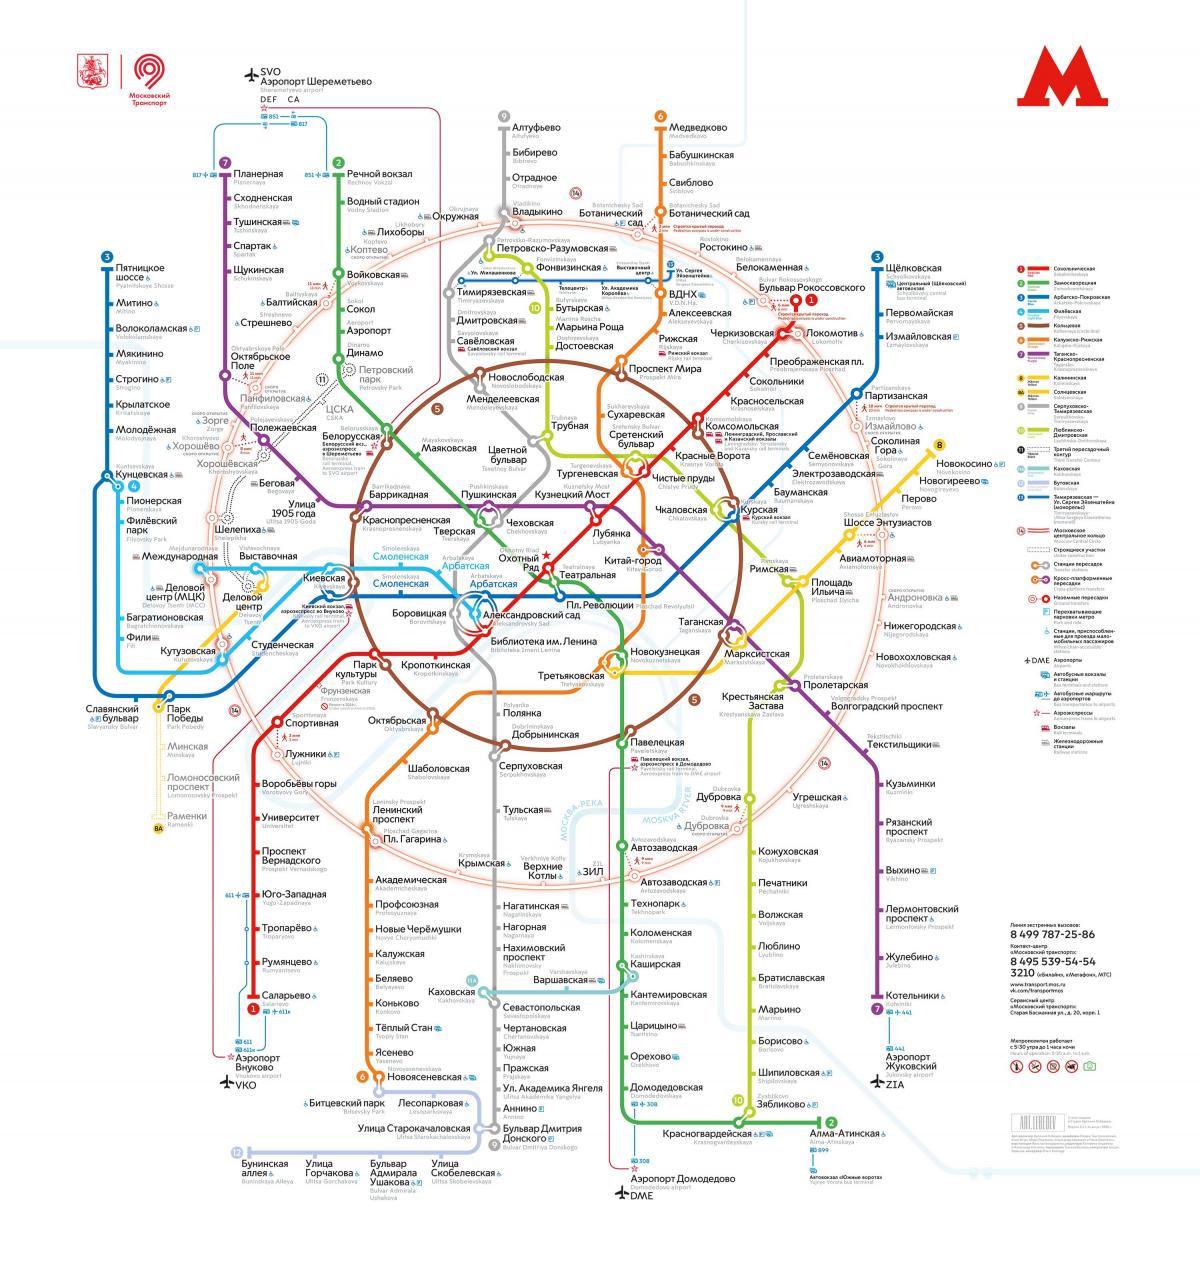 mapa metra w Moskwie